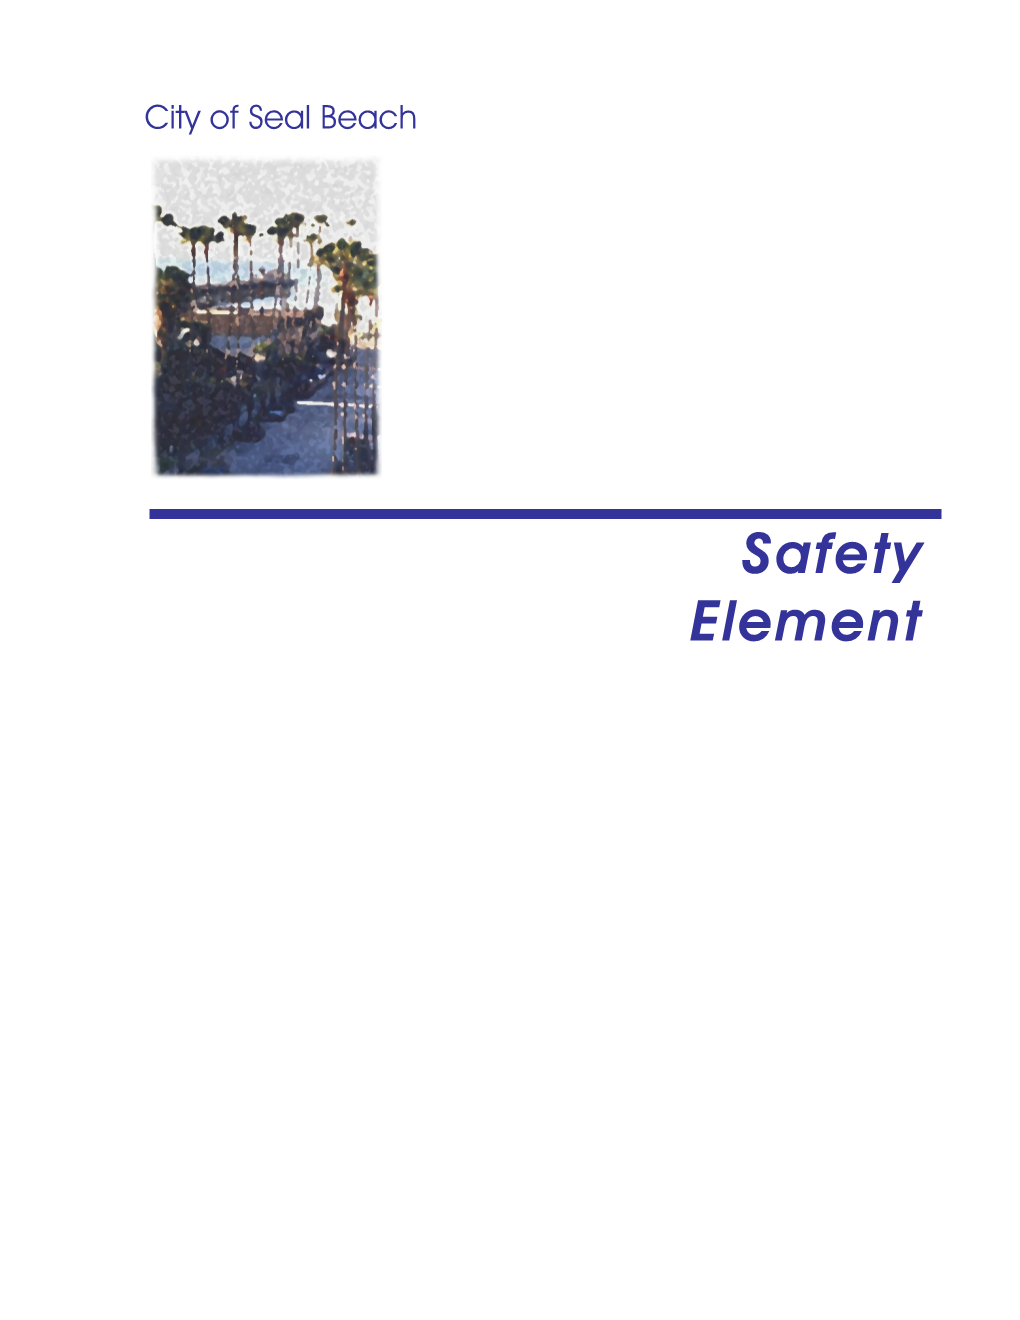 Safety Element